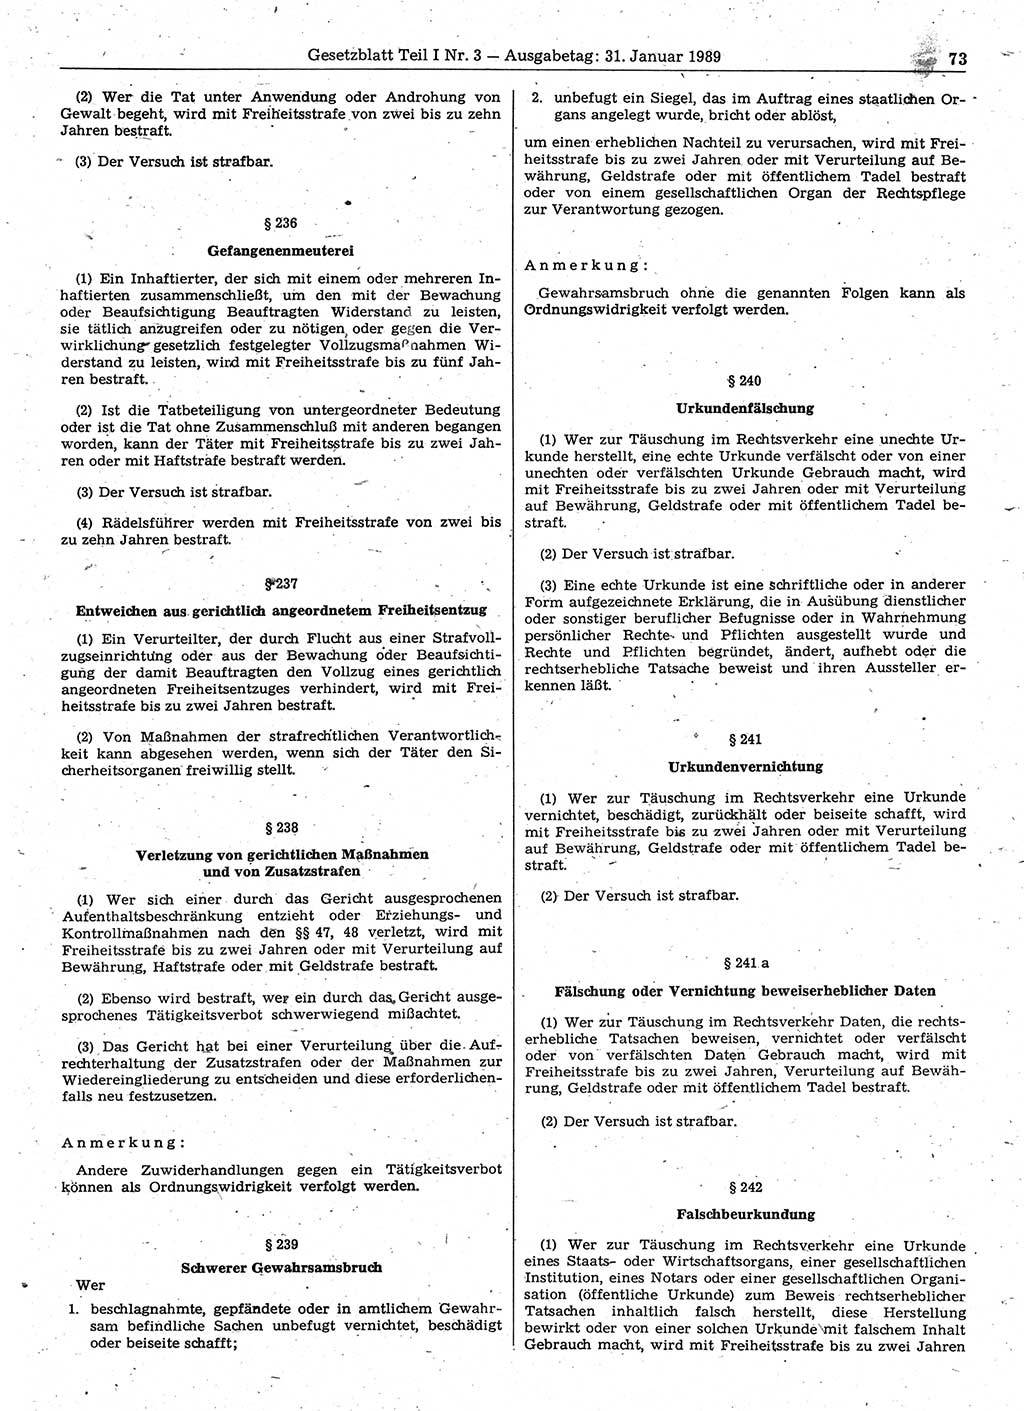 Gesetzblatt (GBl.) der Deutschen Demokratischen Republik (DDR) Teil Ⅰ 1989, Seite 73 (GBl. DDR Ⅰ 1989, S. 73)